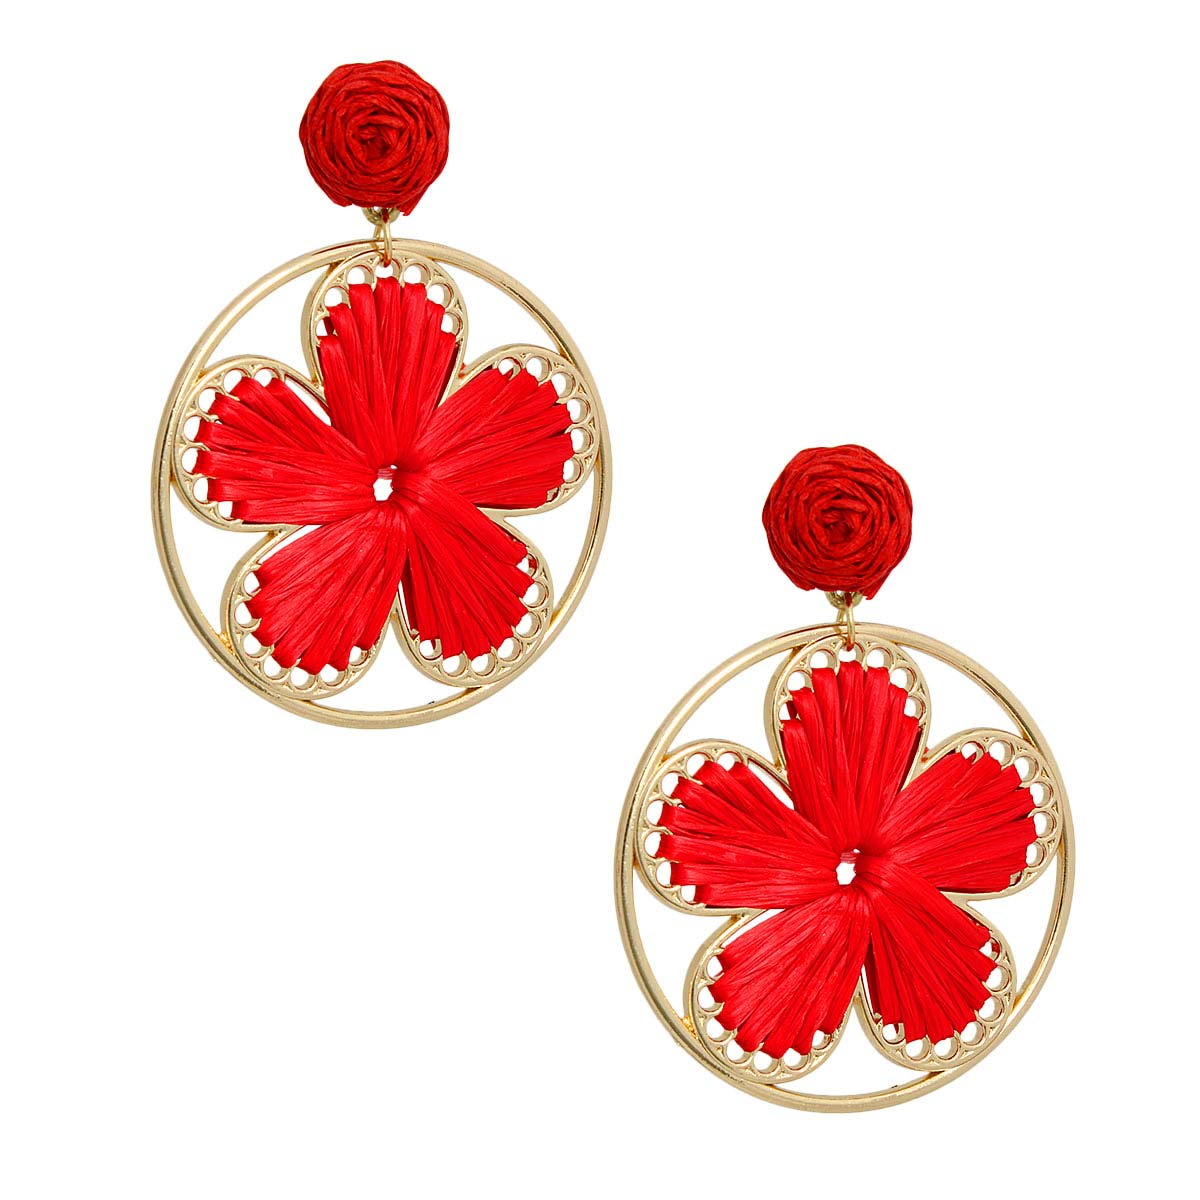 Red Raffia Flower Round Earrings